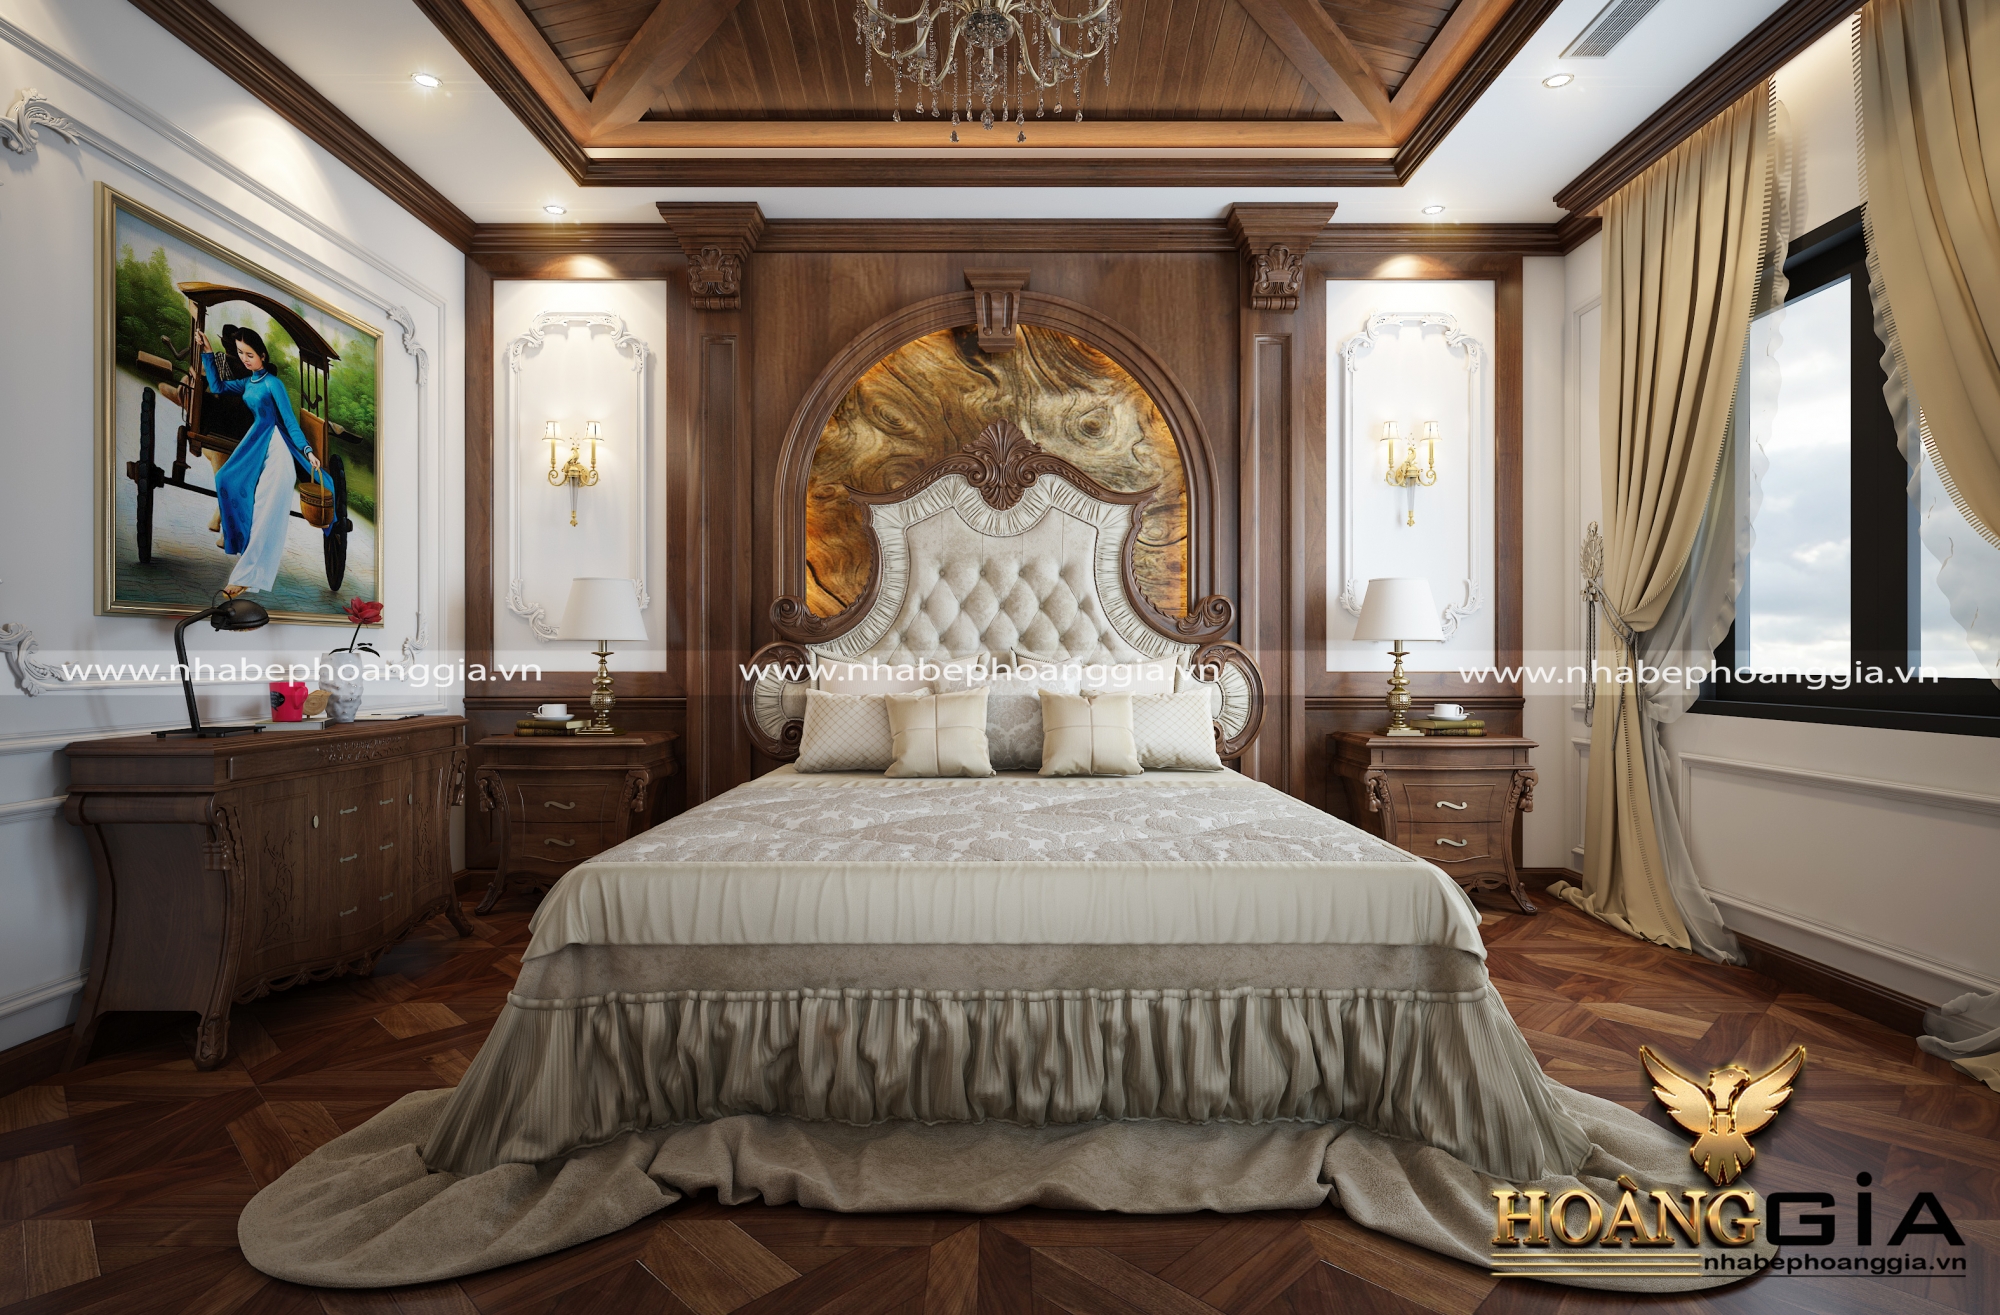 Mẫu phòng ngủ tân cổ điển kiểu Pháp lãng mạn đầy cuốn hút